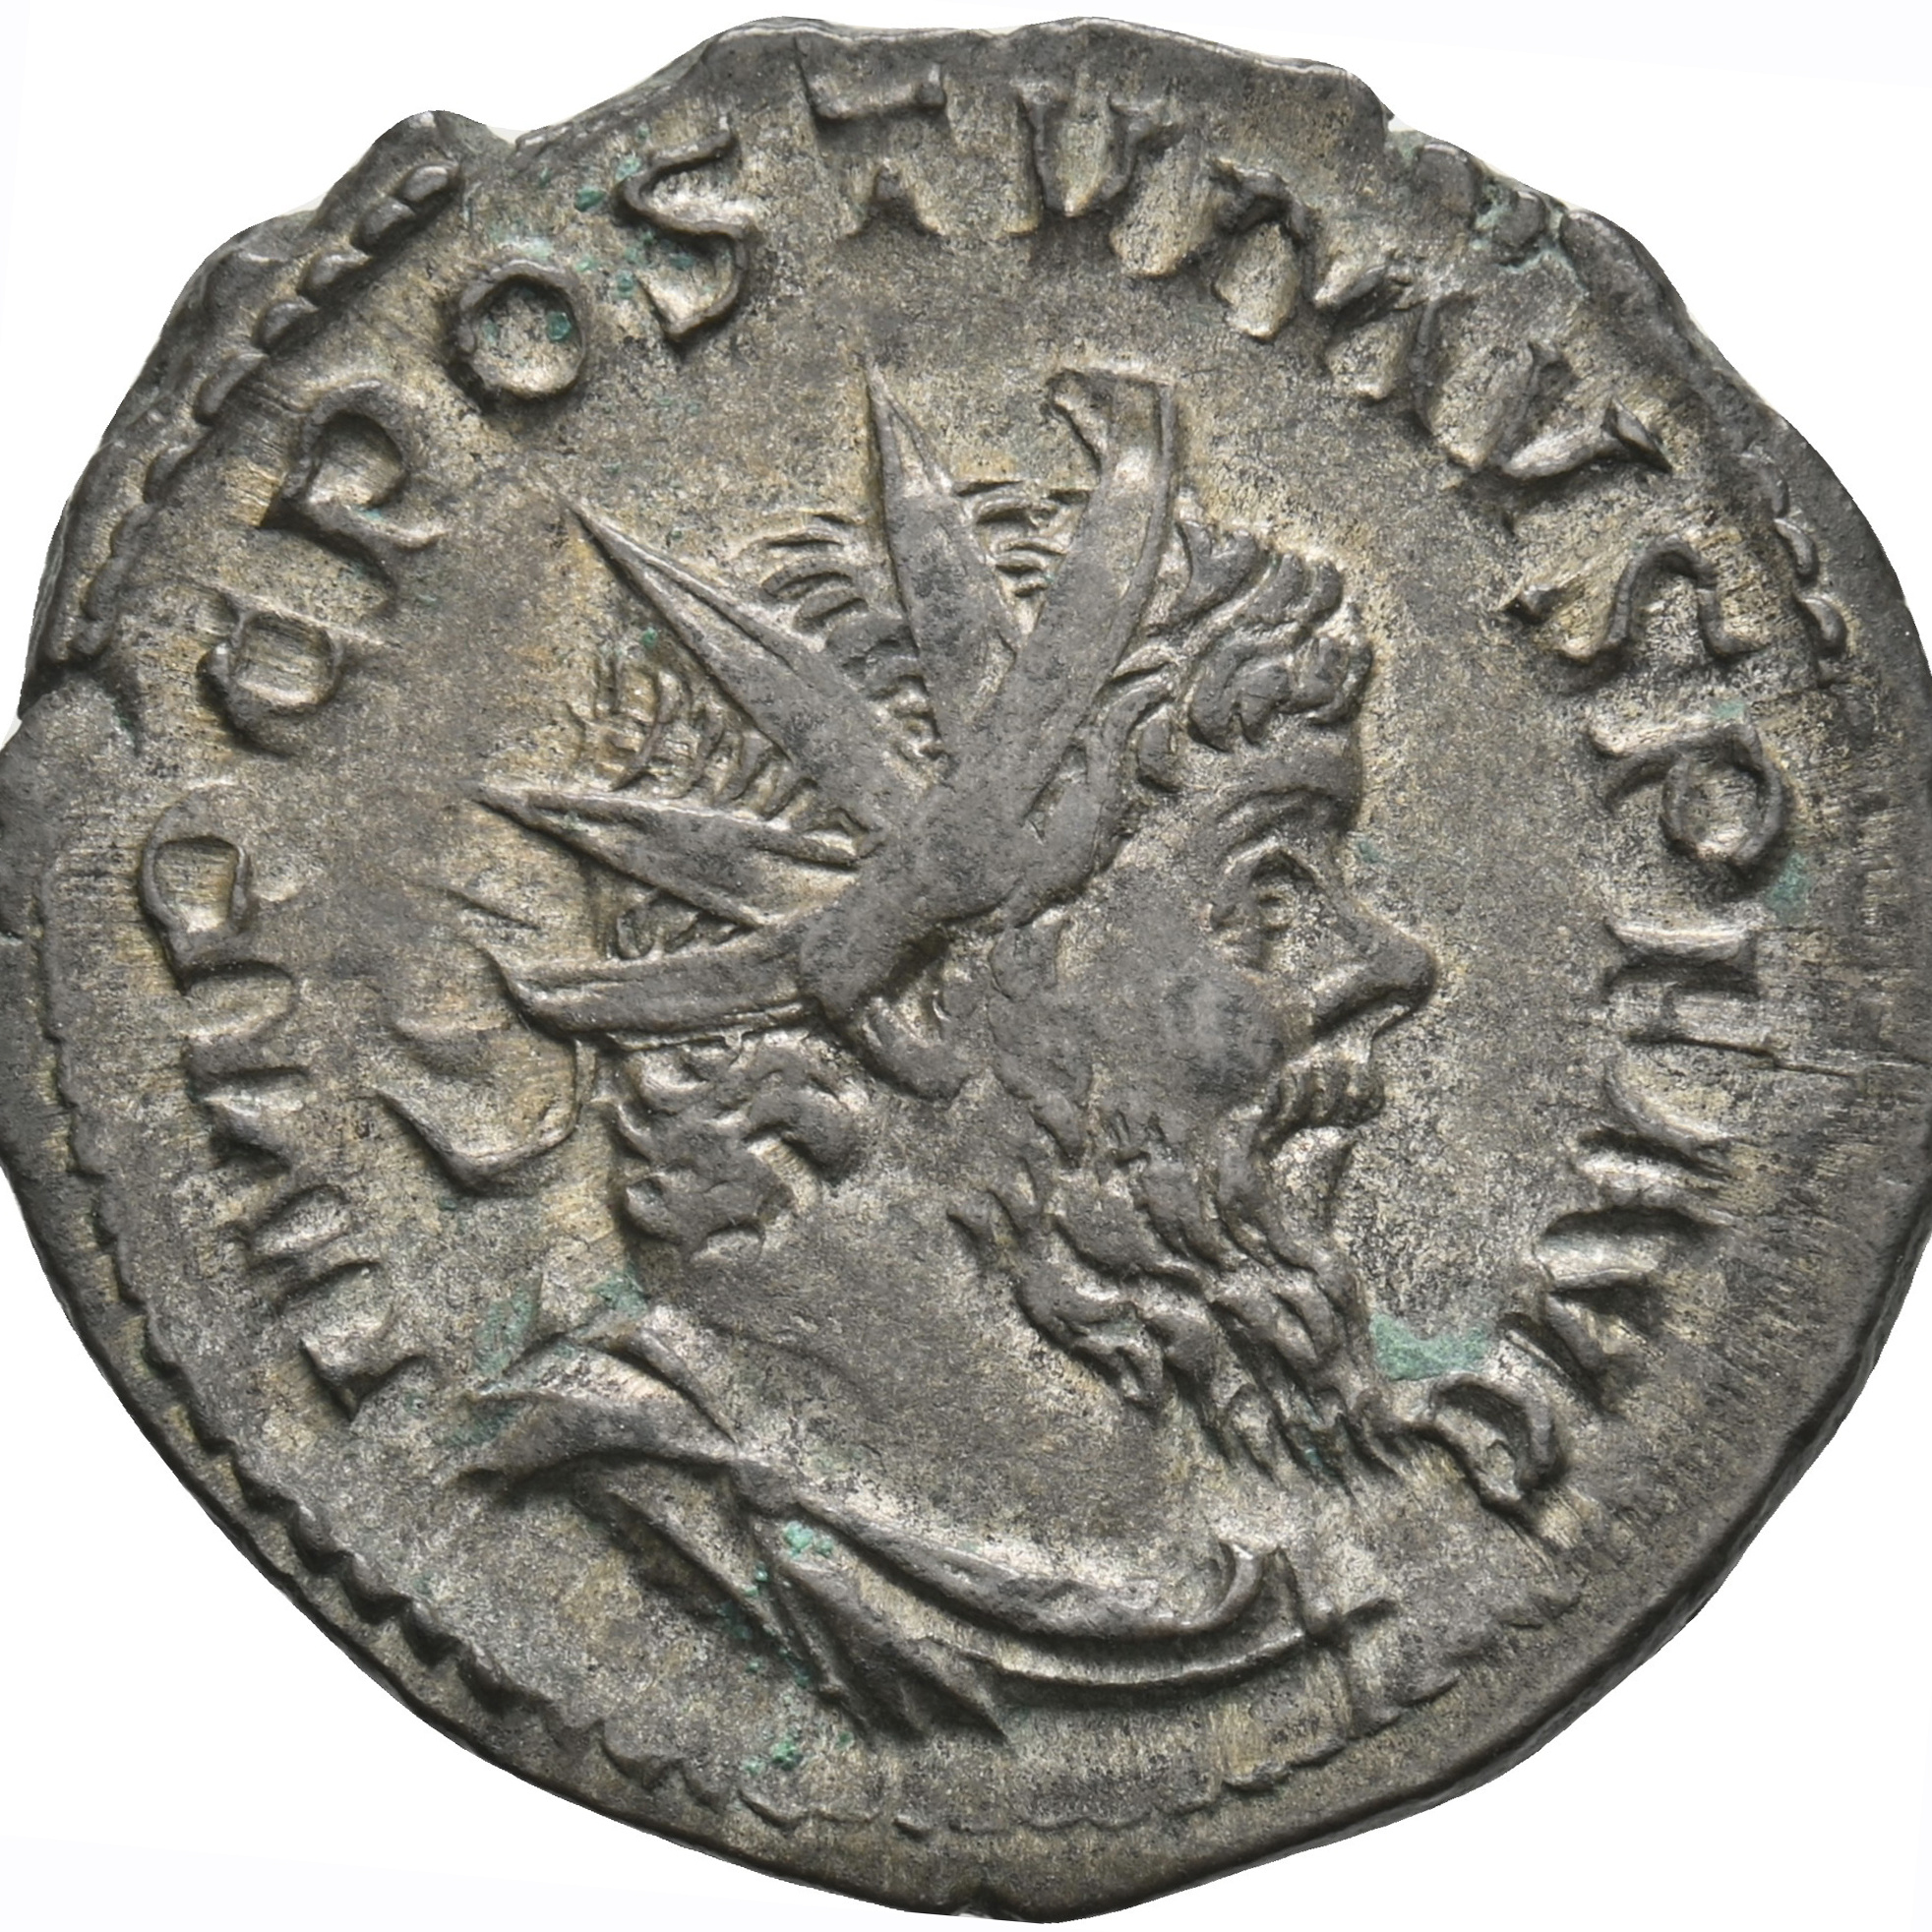 Doppeldenar des römischen Kaisers Postumus aus Silber-Kupfer-Legierung, Prägejahr 267 n. Chr., Prägeort Köln